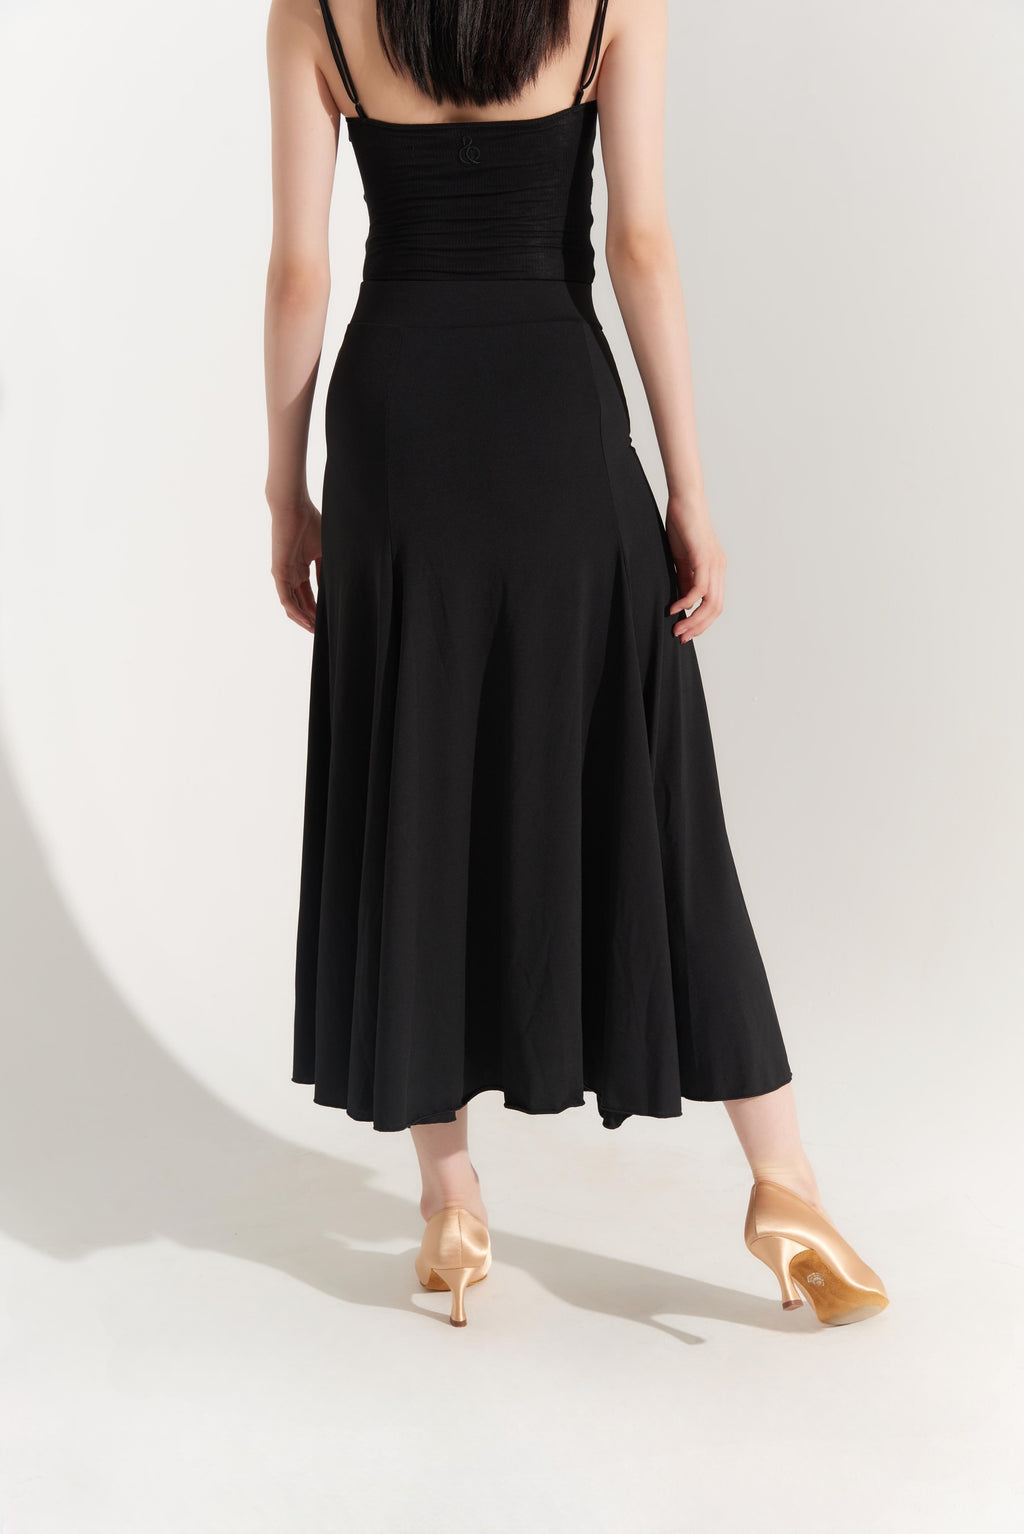 DQ-393 Dance Queen Black Godet Skirt